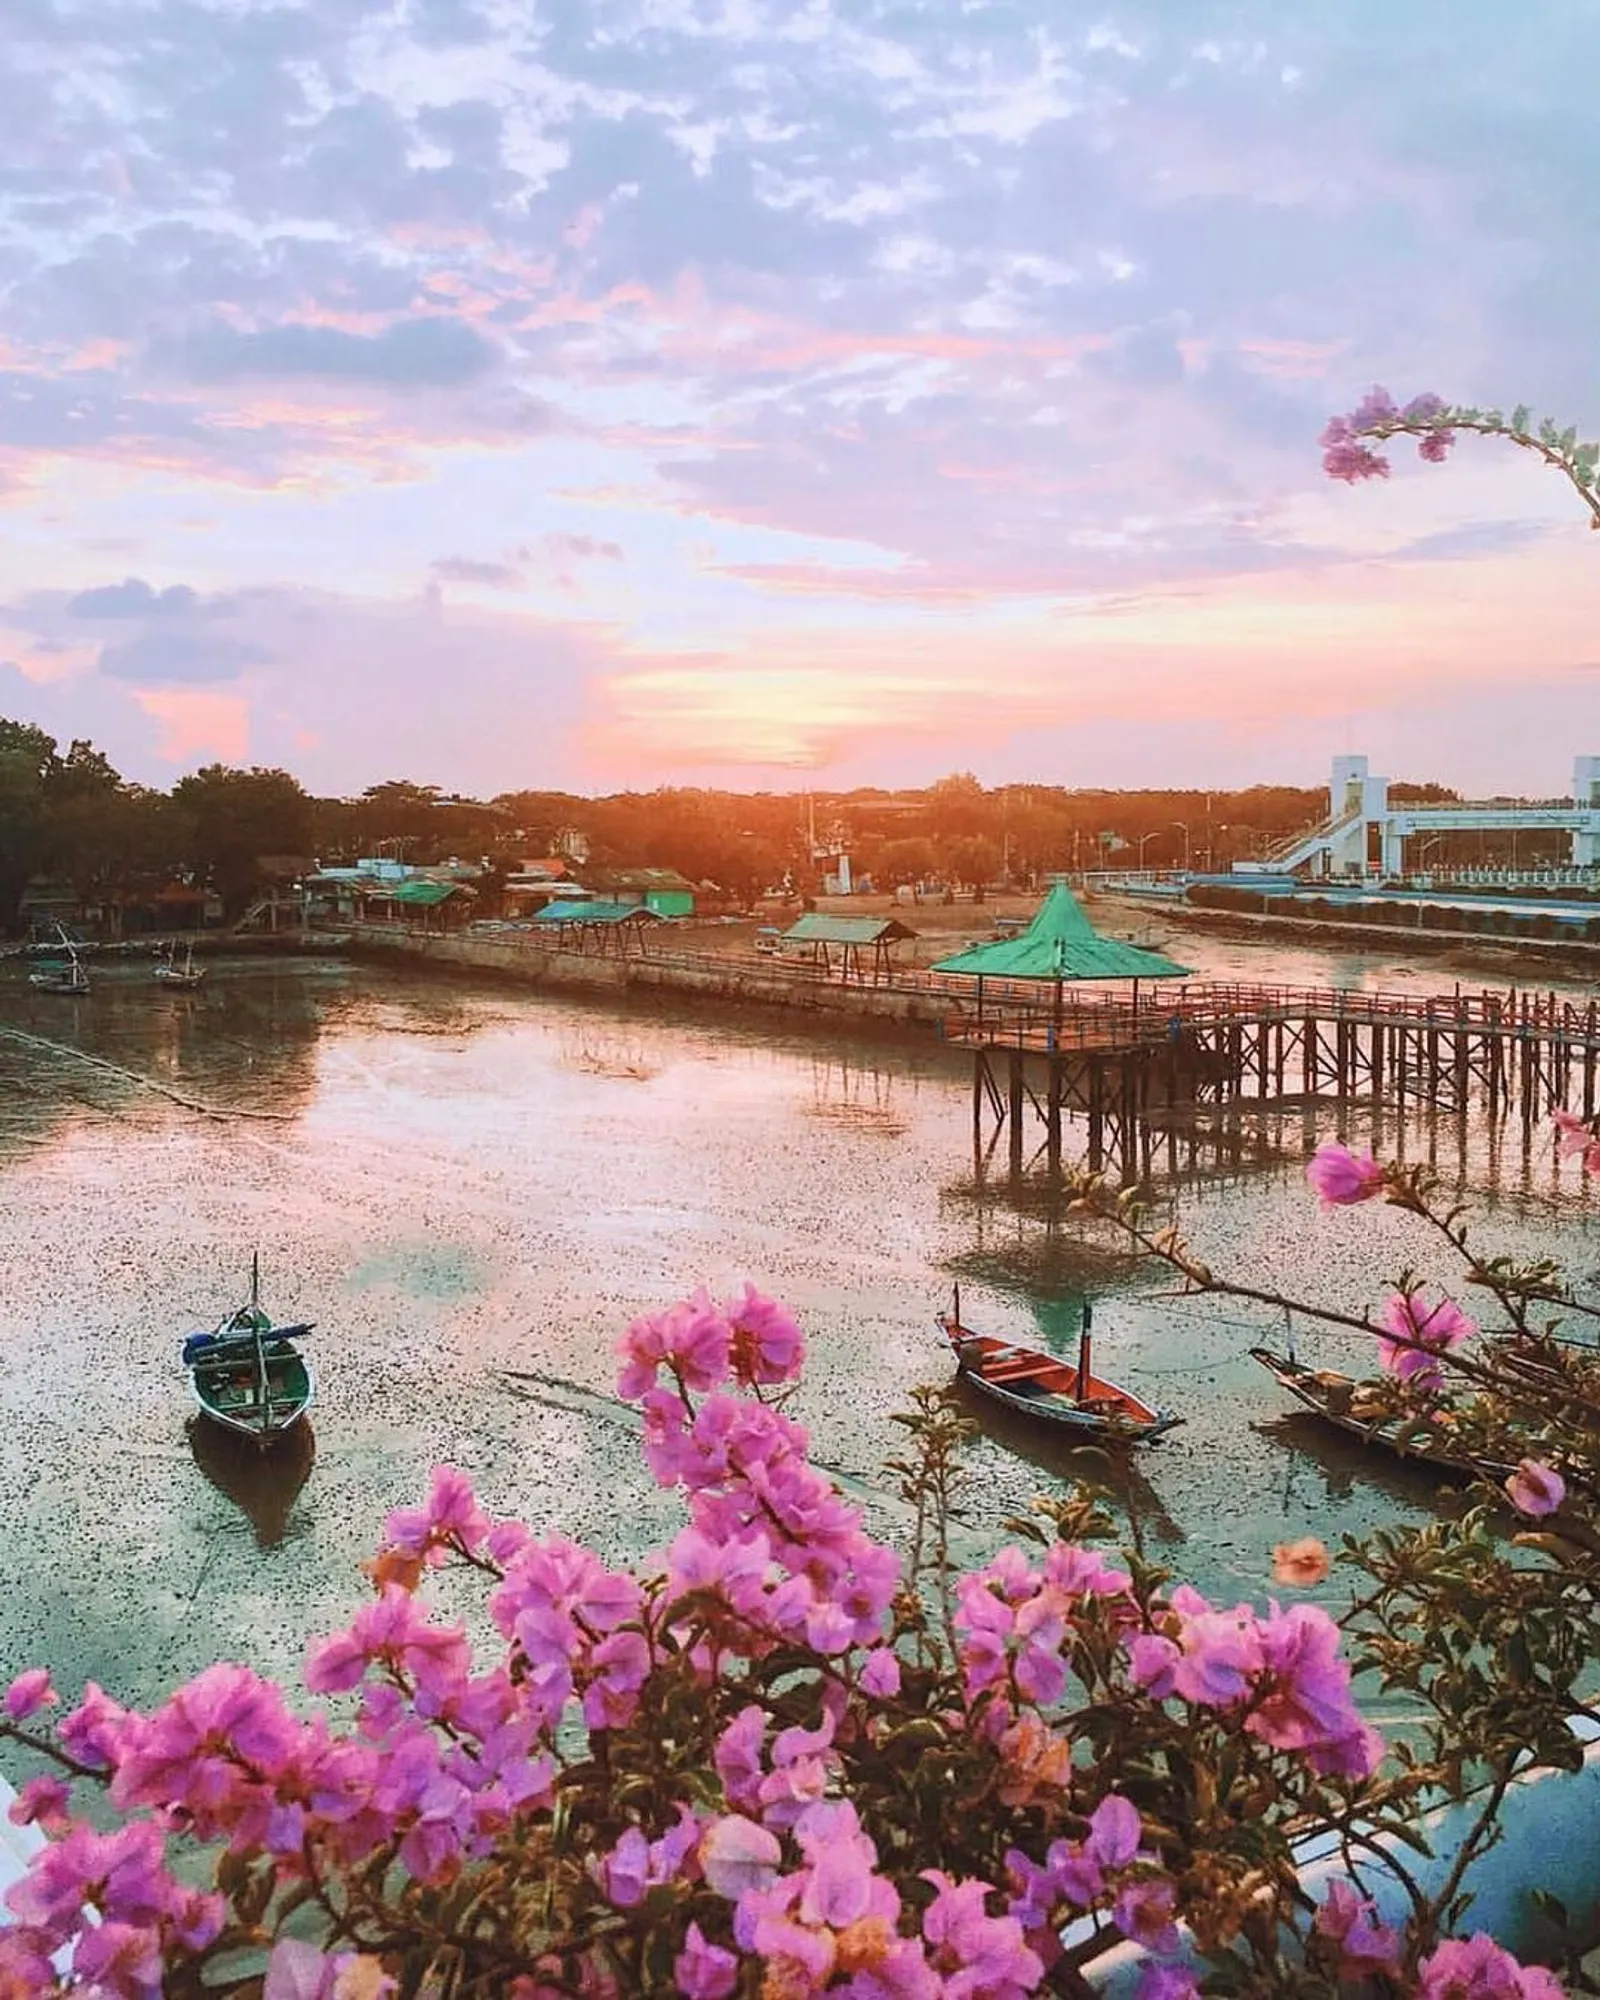 Belum Pernah ke Surabaya? 8 Destinasi Wisata Ini Wajib Kamu Kunjungi